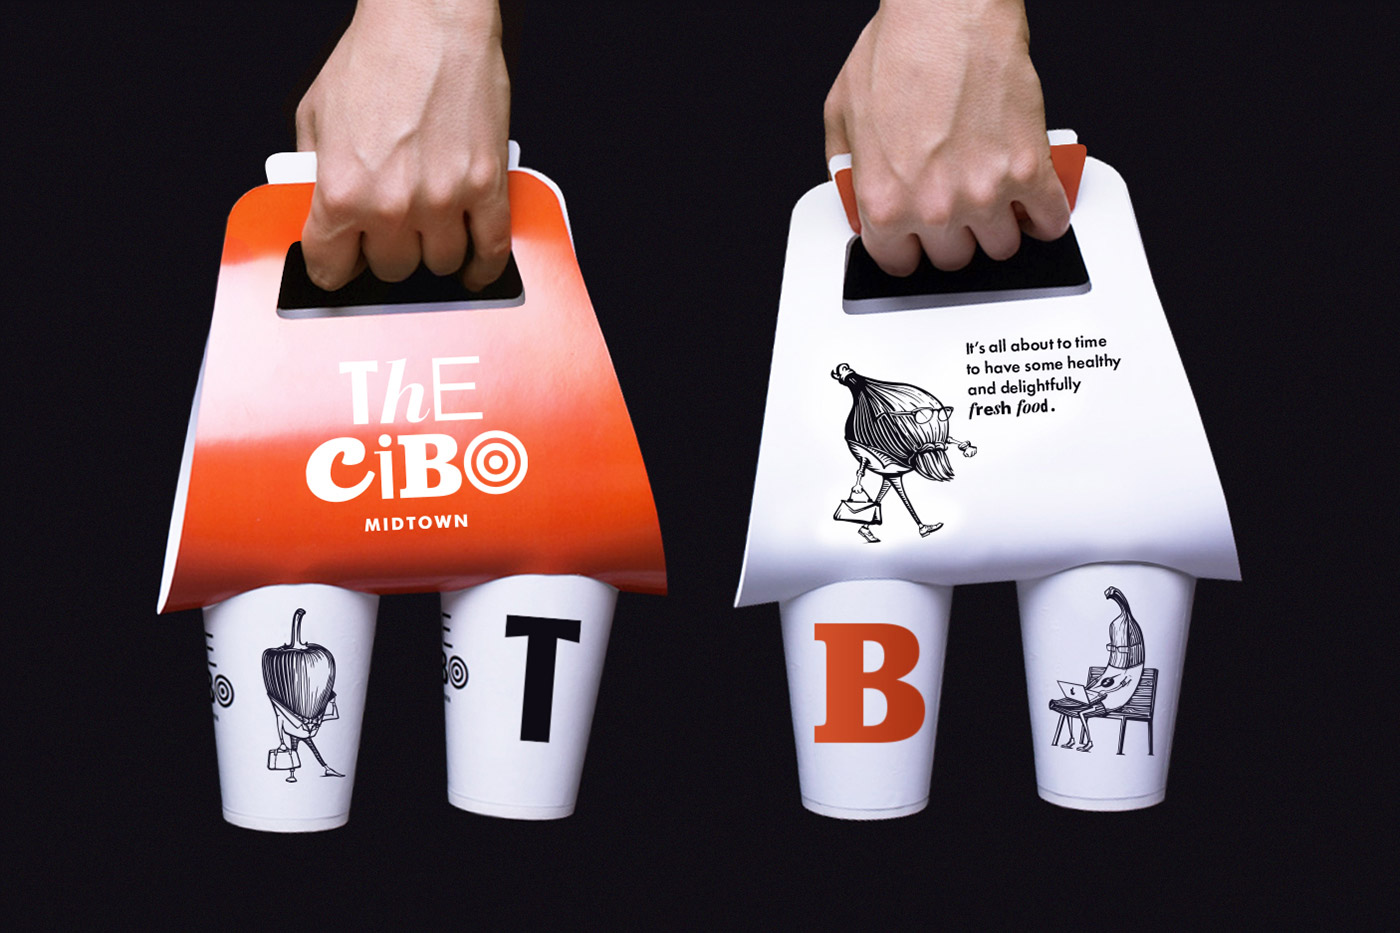 The Cibo品牌创意包装设计